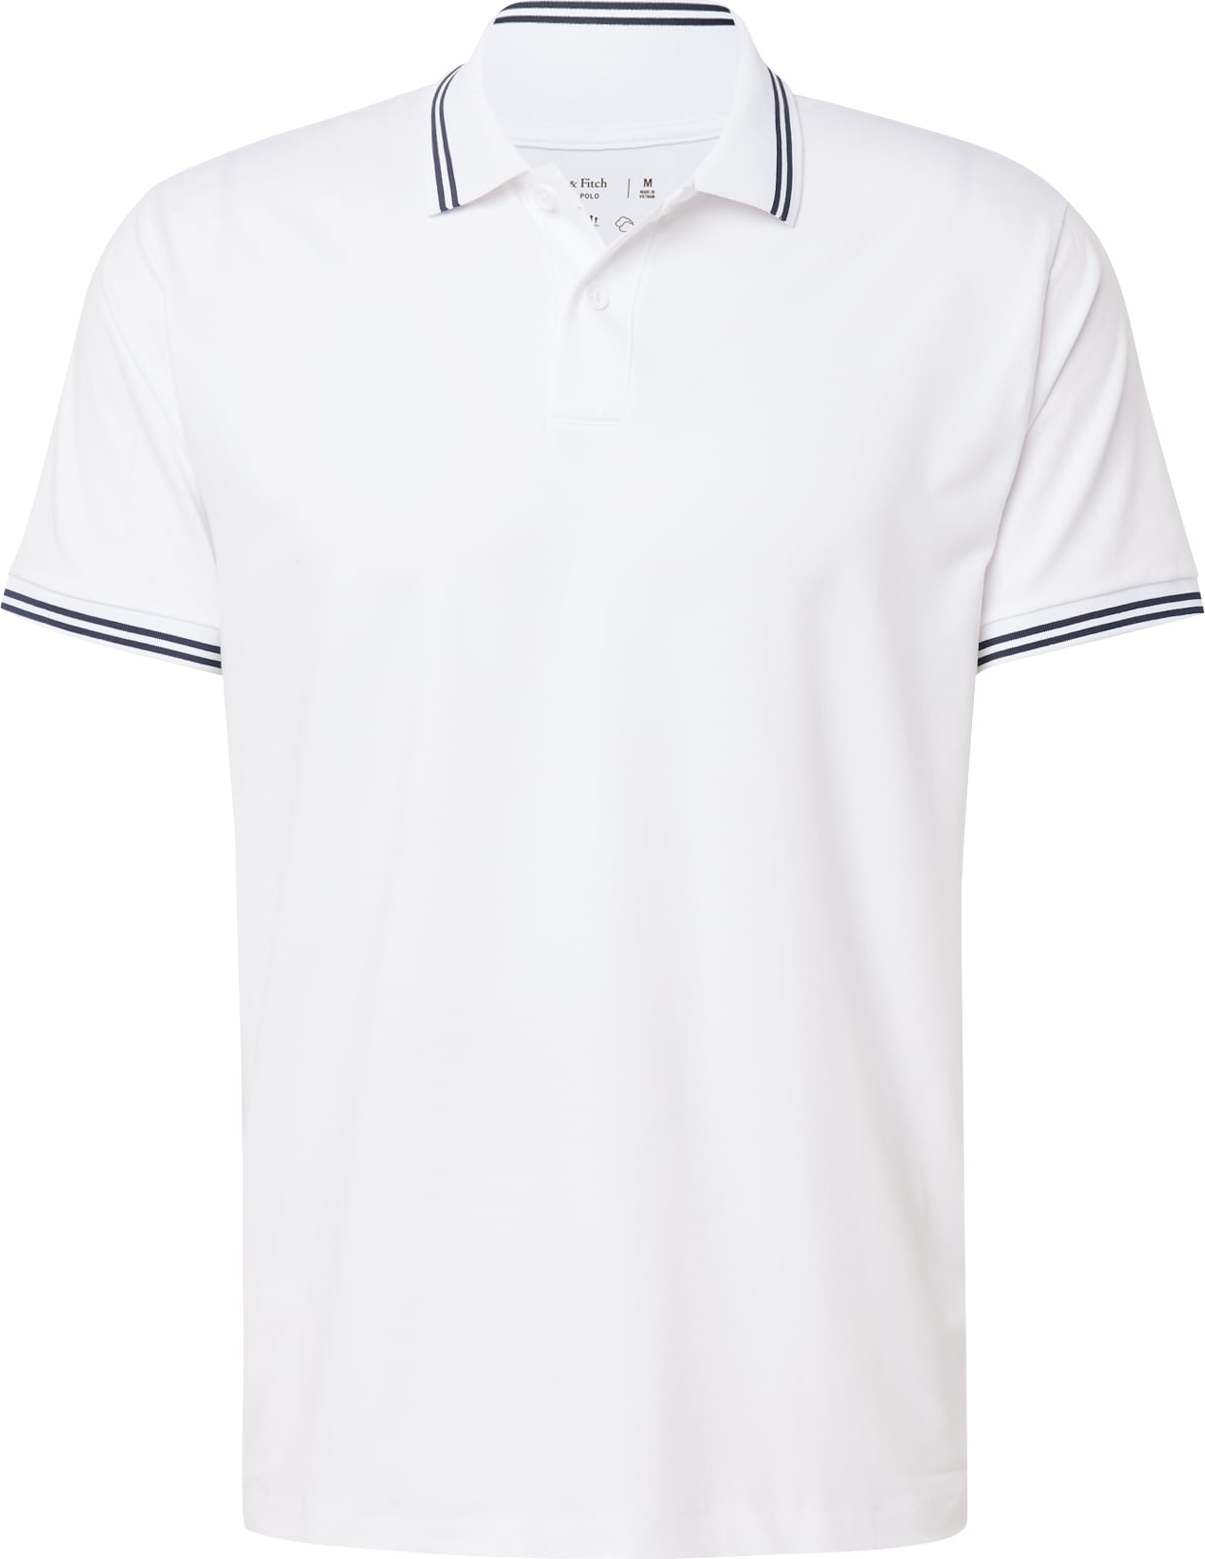 Tričko Abercrombie & Fitch námořnická modř / bílá